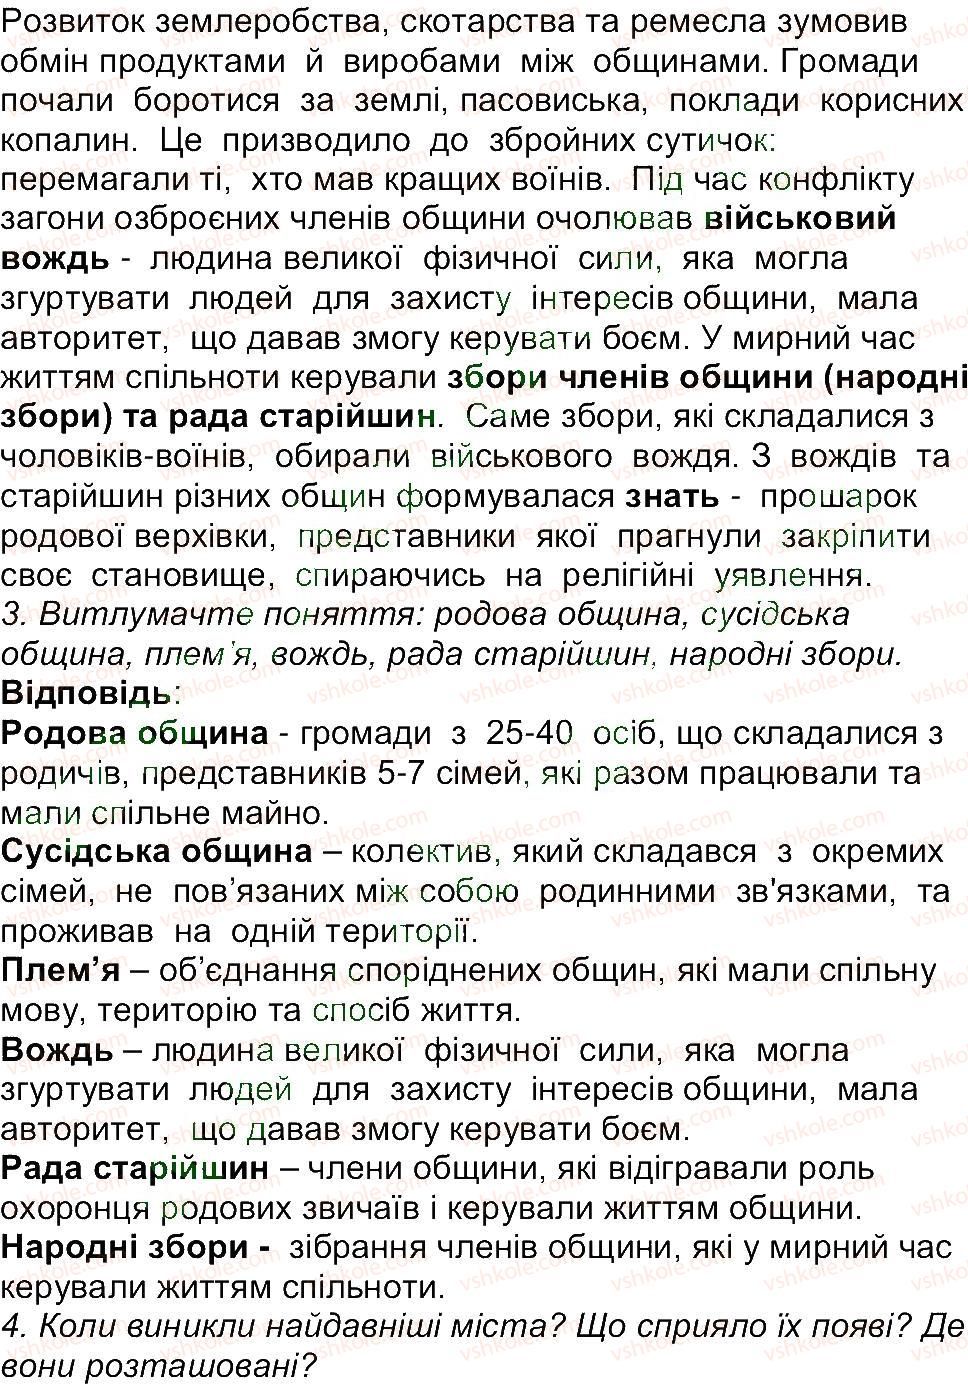 6-istoriya-og-bandrovskij-vs-vlasov-2014--storinki-9-70-37-rnd6203.jpg